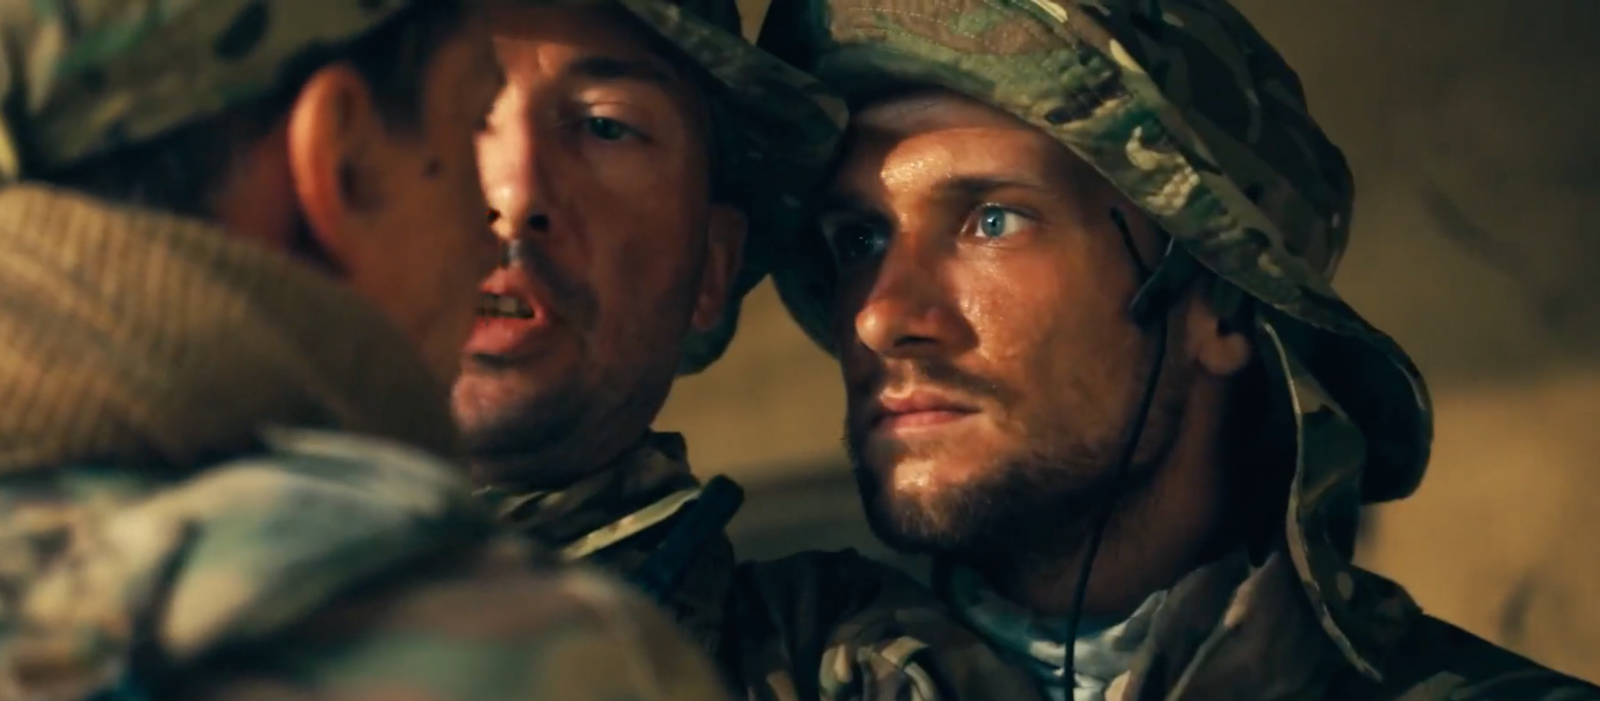 «Такие фильмы очень нужны»: военный журналист Поддубный о важности боевика «Турист» - image 1